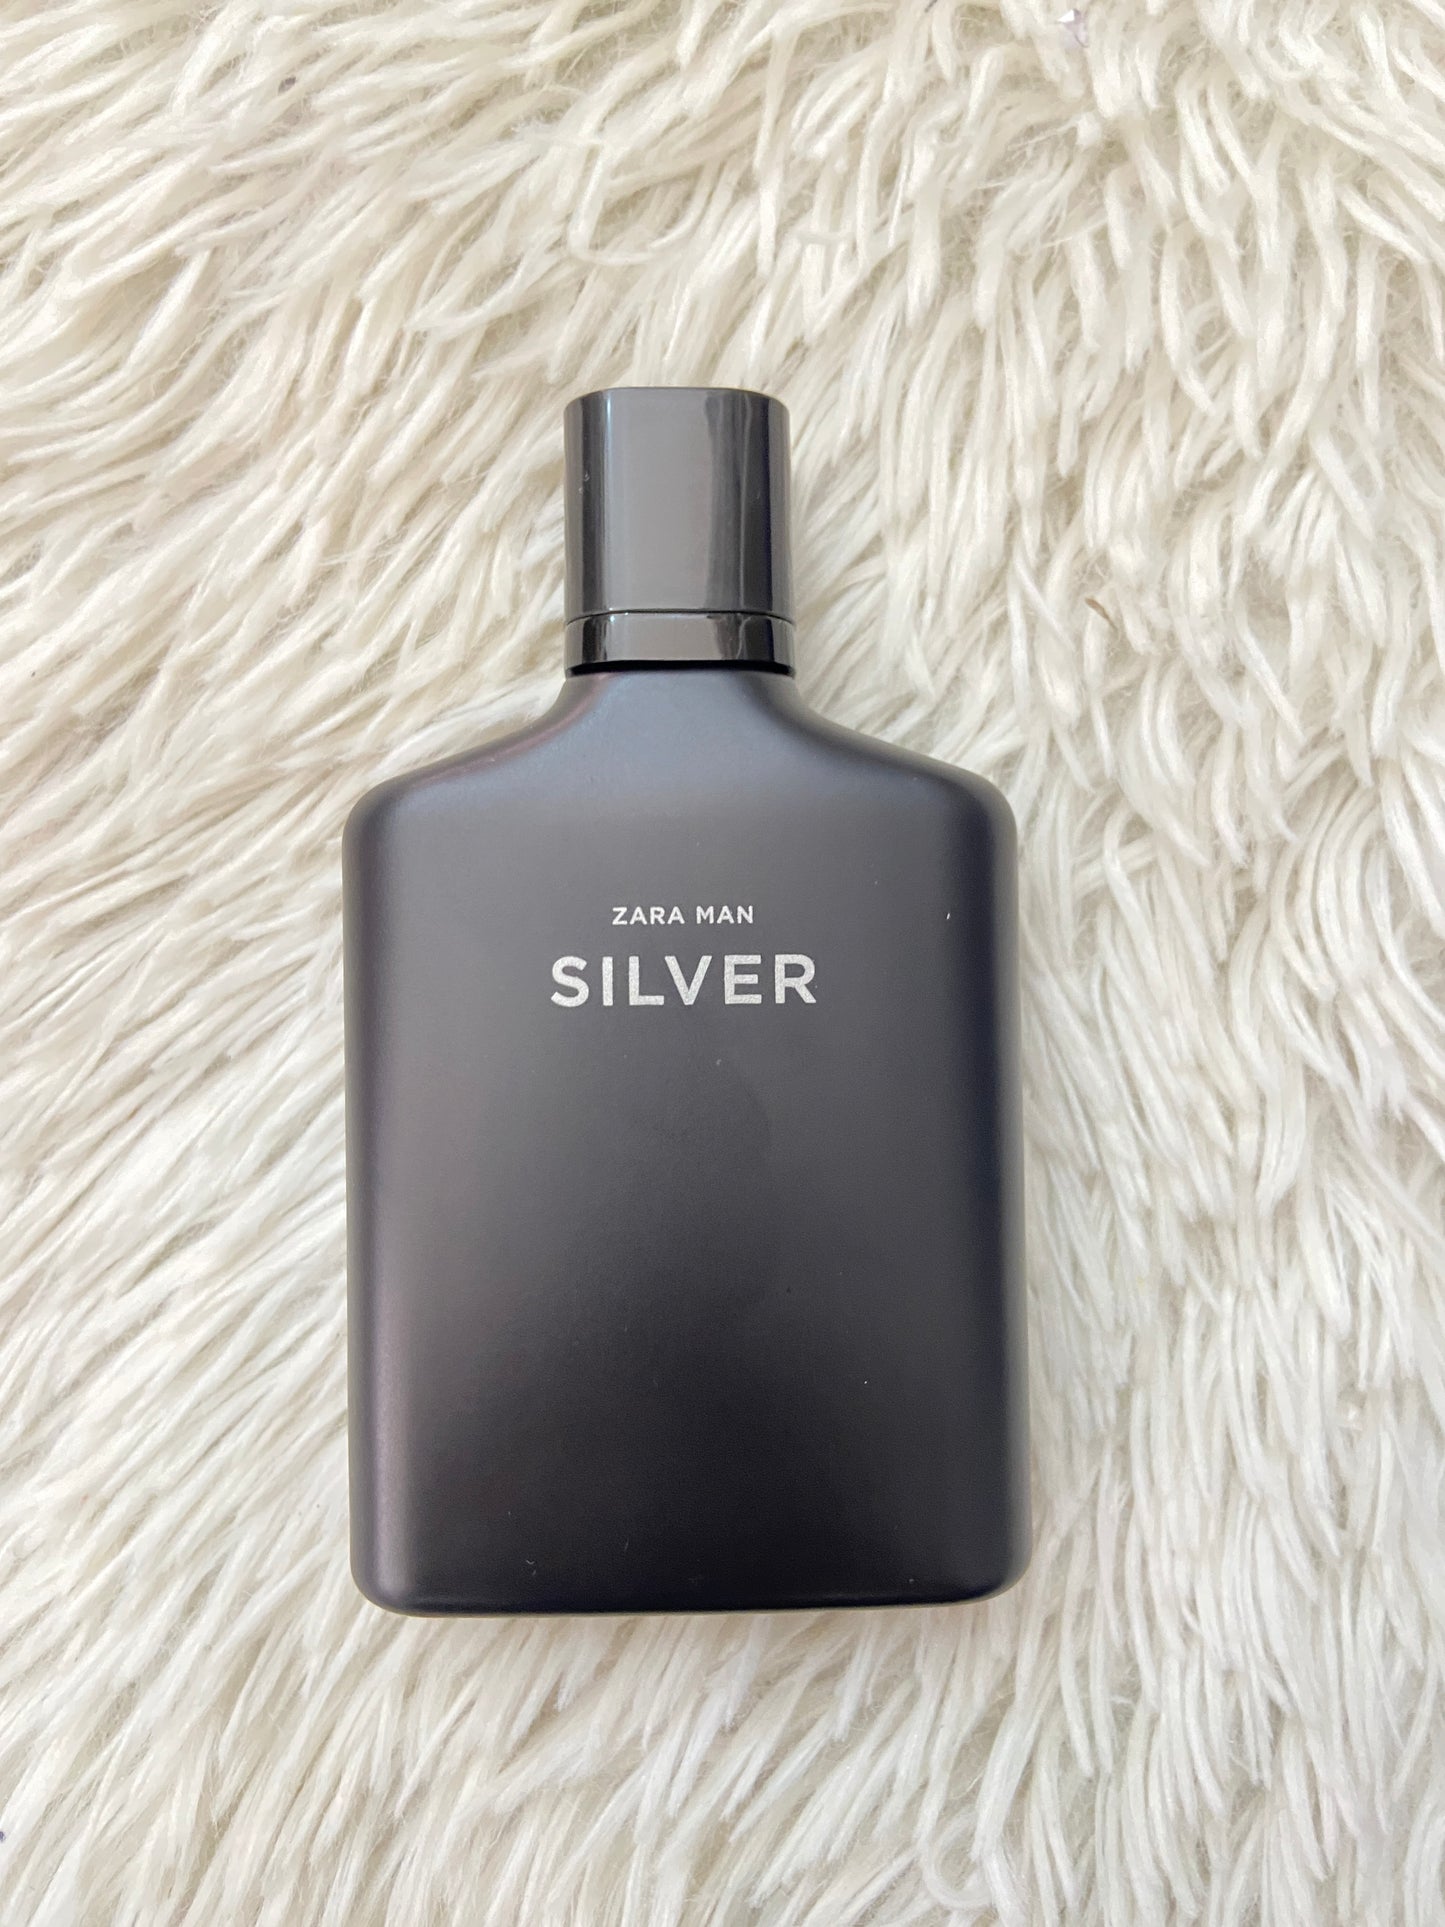 Perfume Zara original SILVER, negro con notas de limón, jazmín y madera.